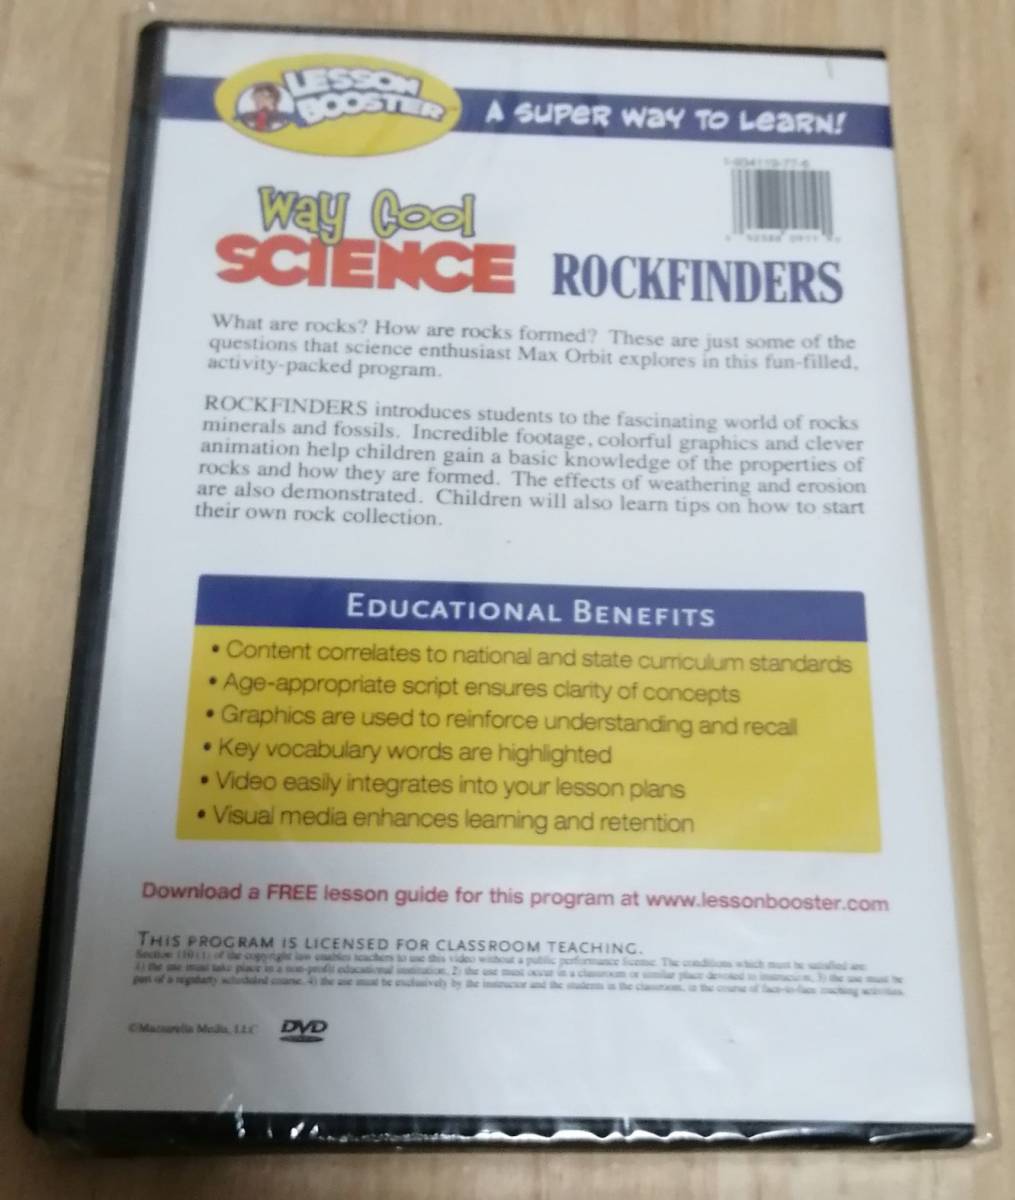 【英語DVD】LESSON BOOSTER way cool SCIENCE 『ROCKFINDERS』（Appropriate For Grades 3－8）★Mazzarella Media_画像2